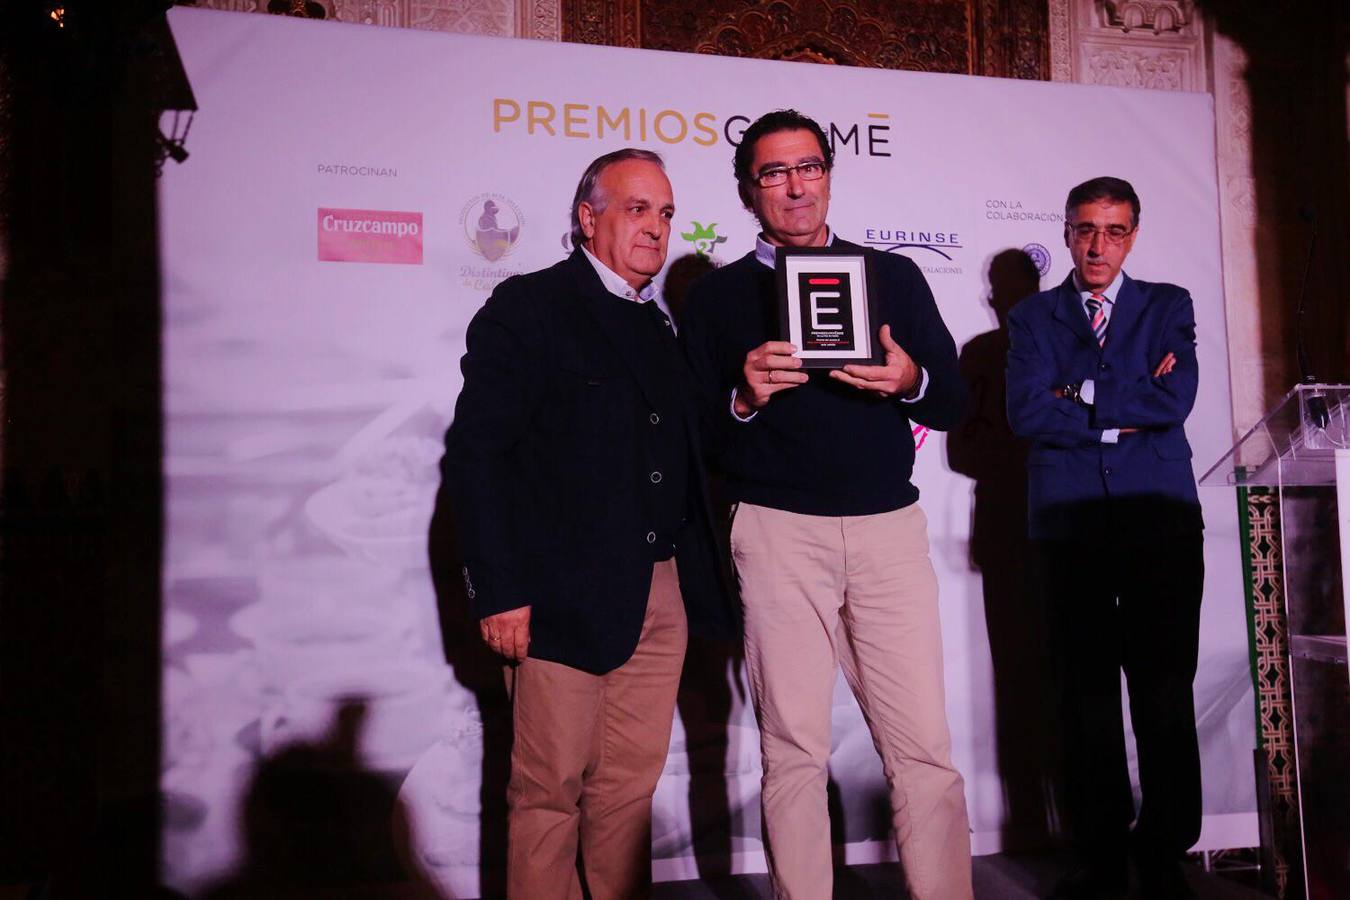 Vicente Fernandez, Profesor de Hostelería, Instituto Alminares, entrega el premio Gurmé Cádiz 2018 correspondiente al Jurado profesional a BAR JAMÓN, en El Puerto de Santa María. Recoge el premio Pepe Fernández, propietario del restaurante BAR JAMÓN.. 